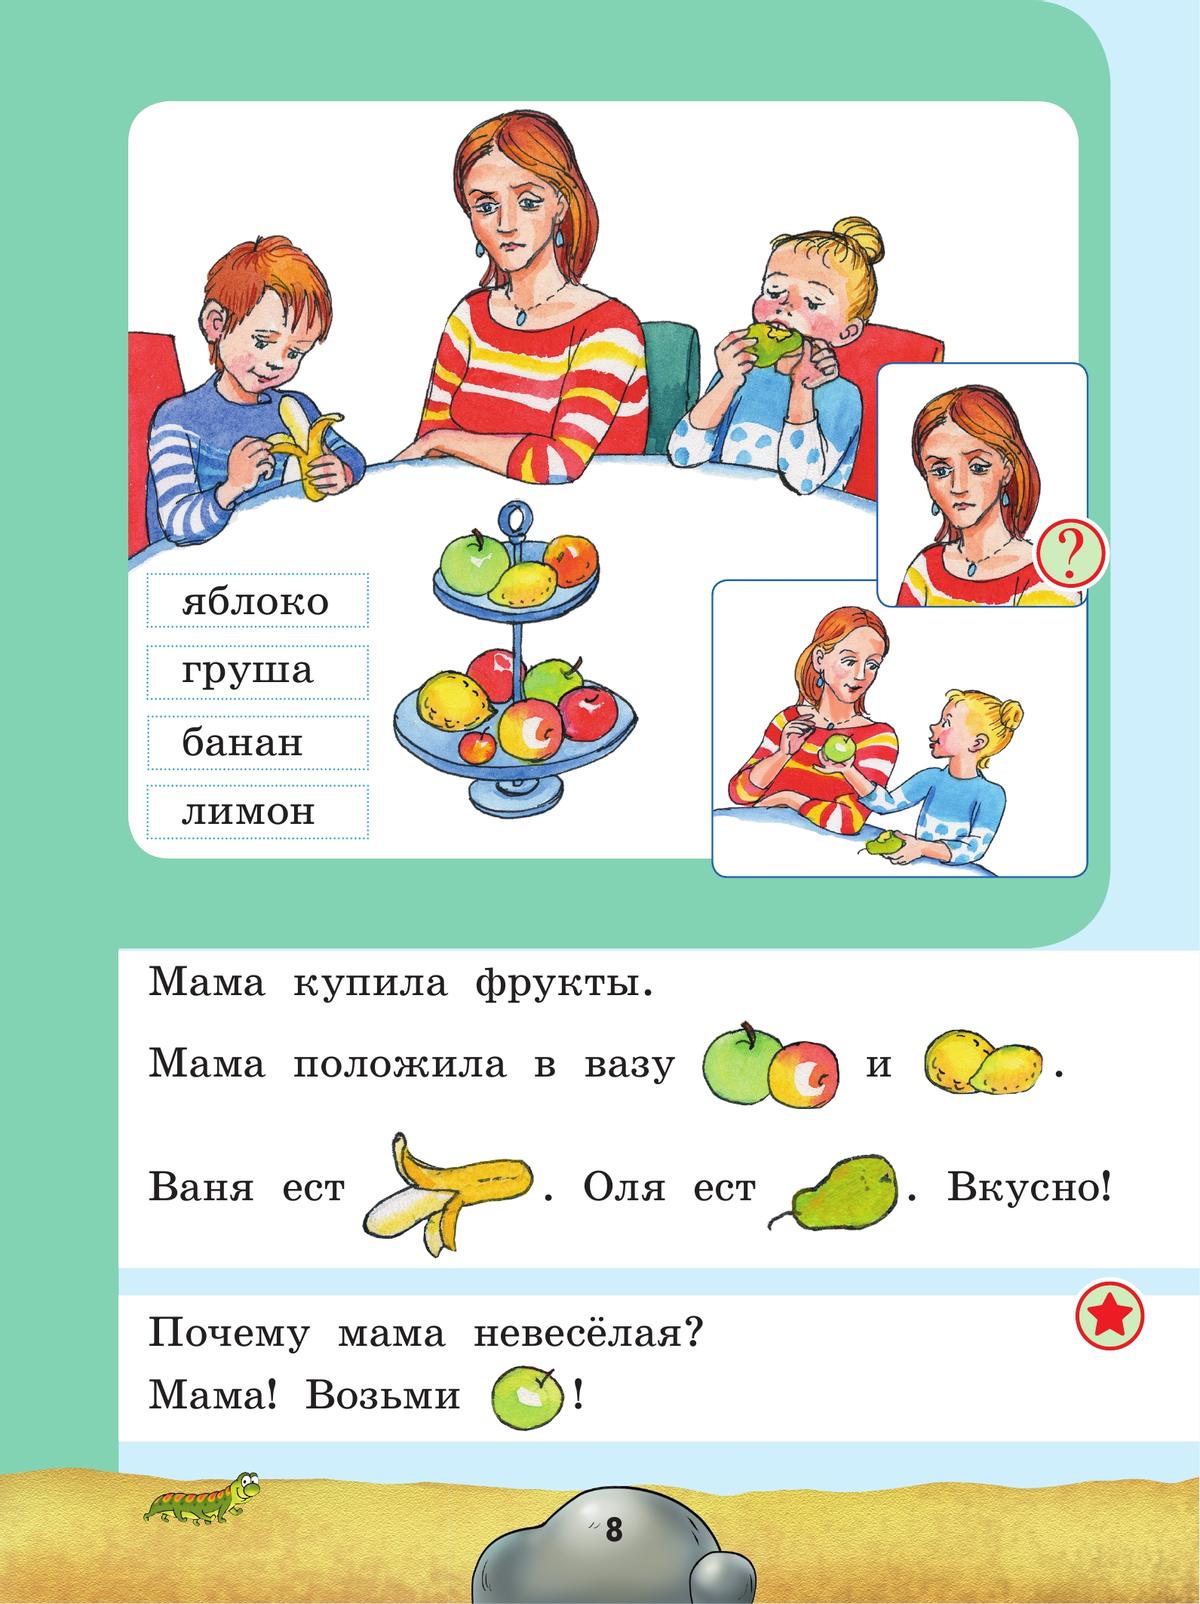 Русский язык. Развитие речи. 1 дополнительный класс. Учебник. (для глухих обучающихся) 5